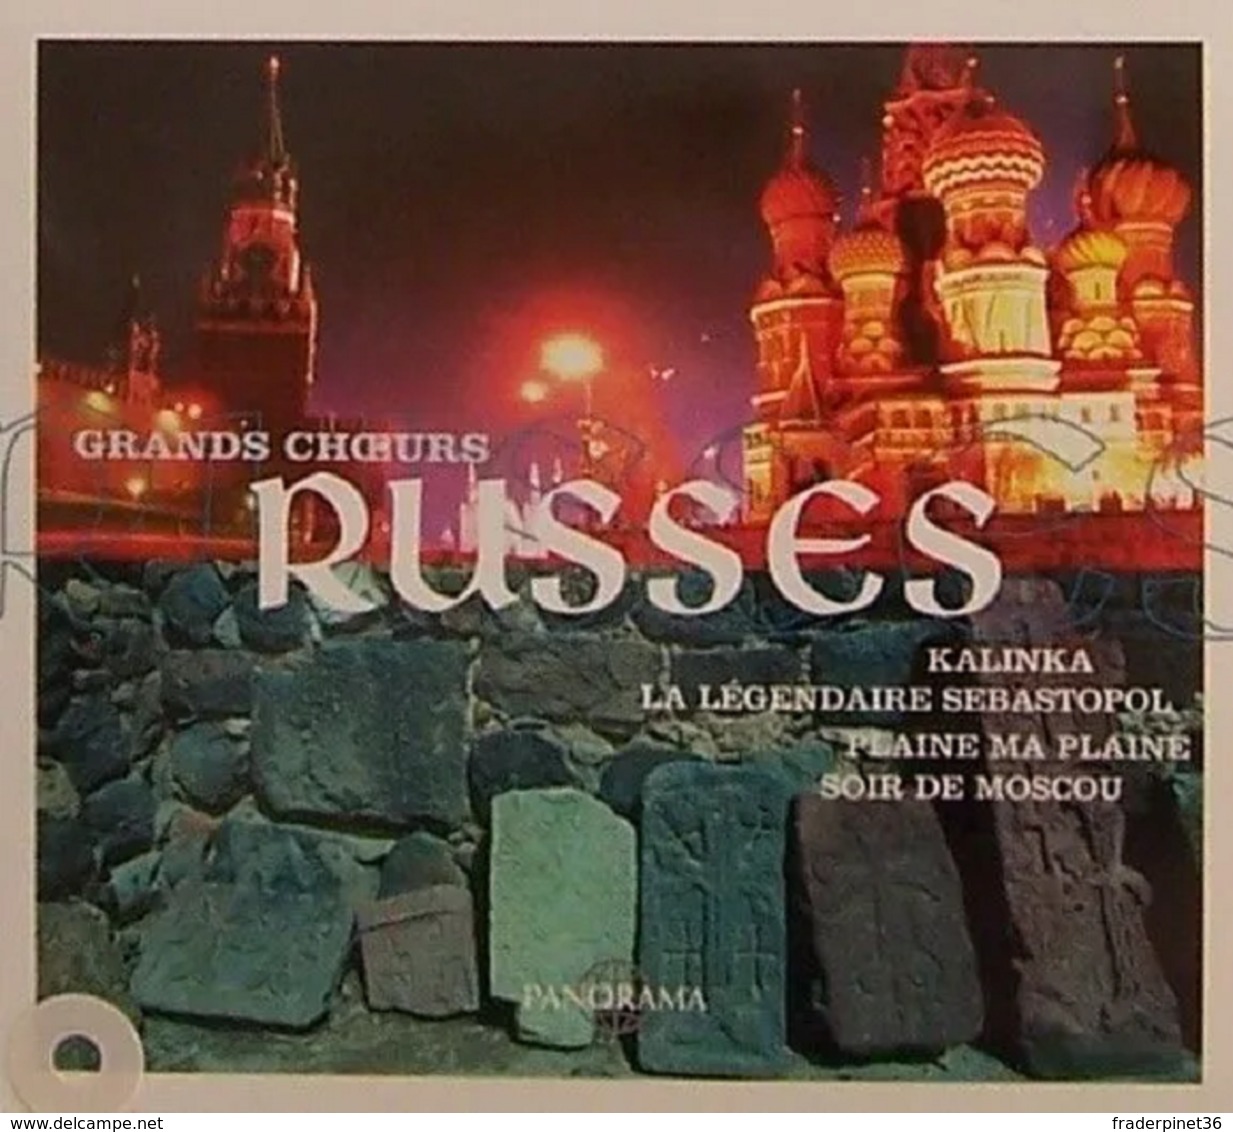 Grands Choeurs Russes : Kalinka - CD - Musicals